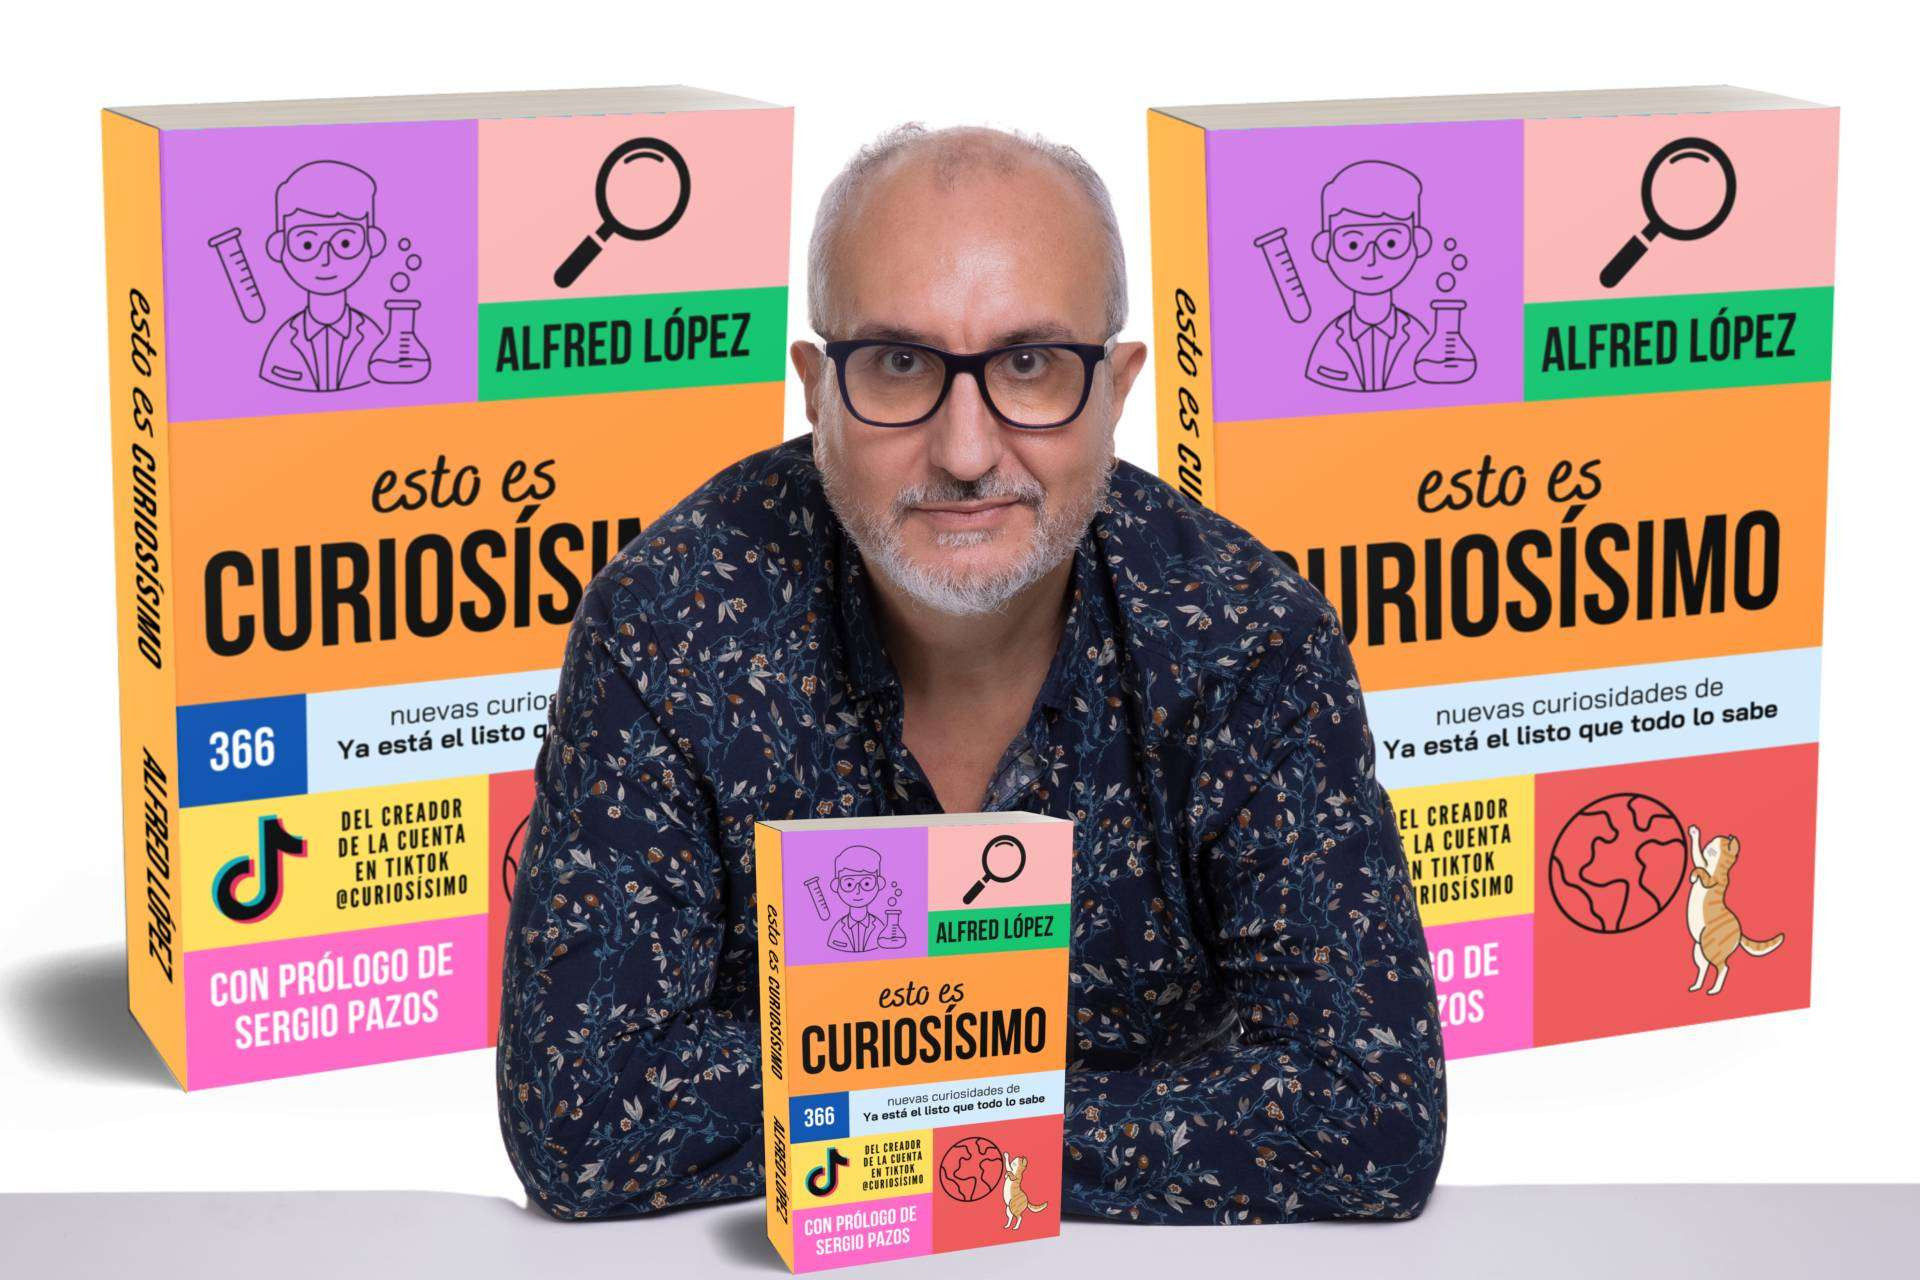  Alfred López presenta su nuevo libro de curiosidades; 'Esto es CURIOSÍSIMO' 